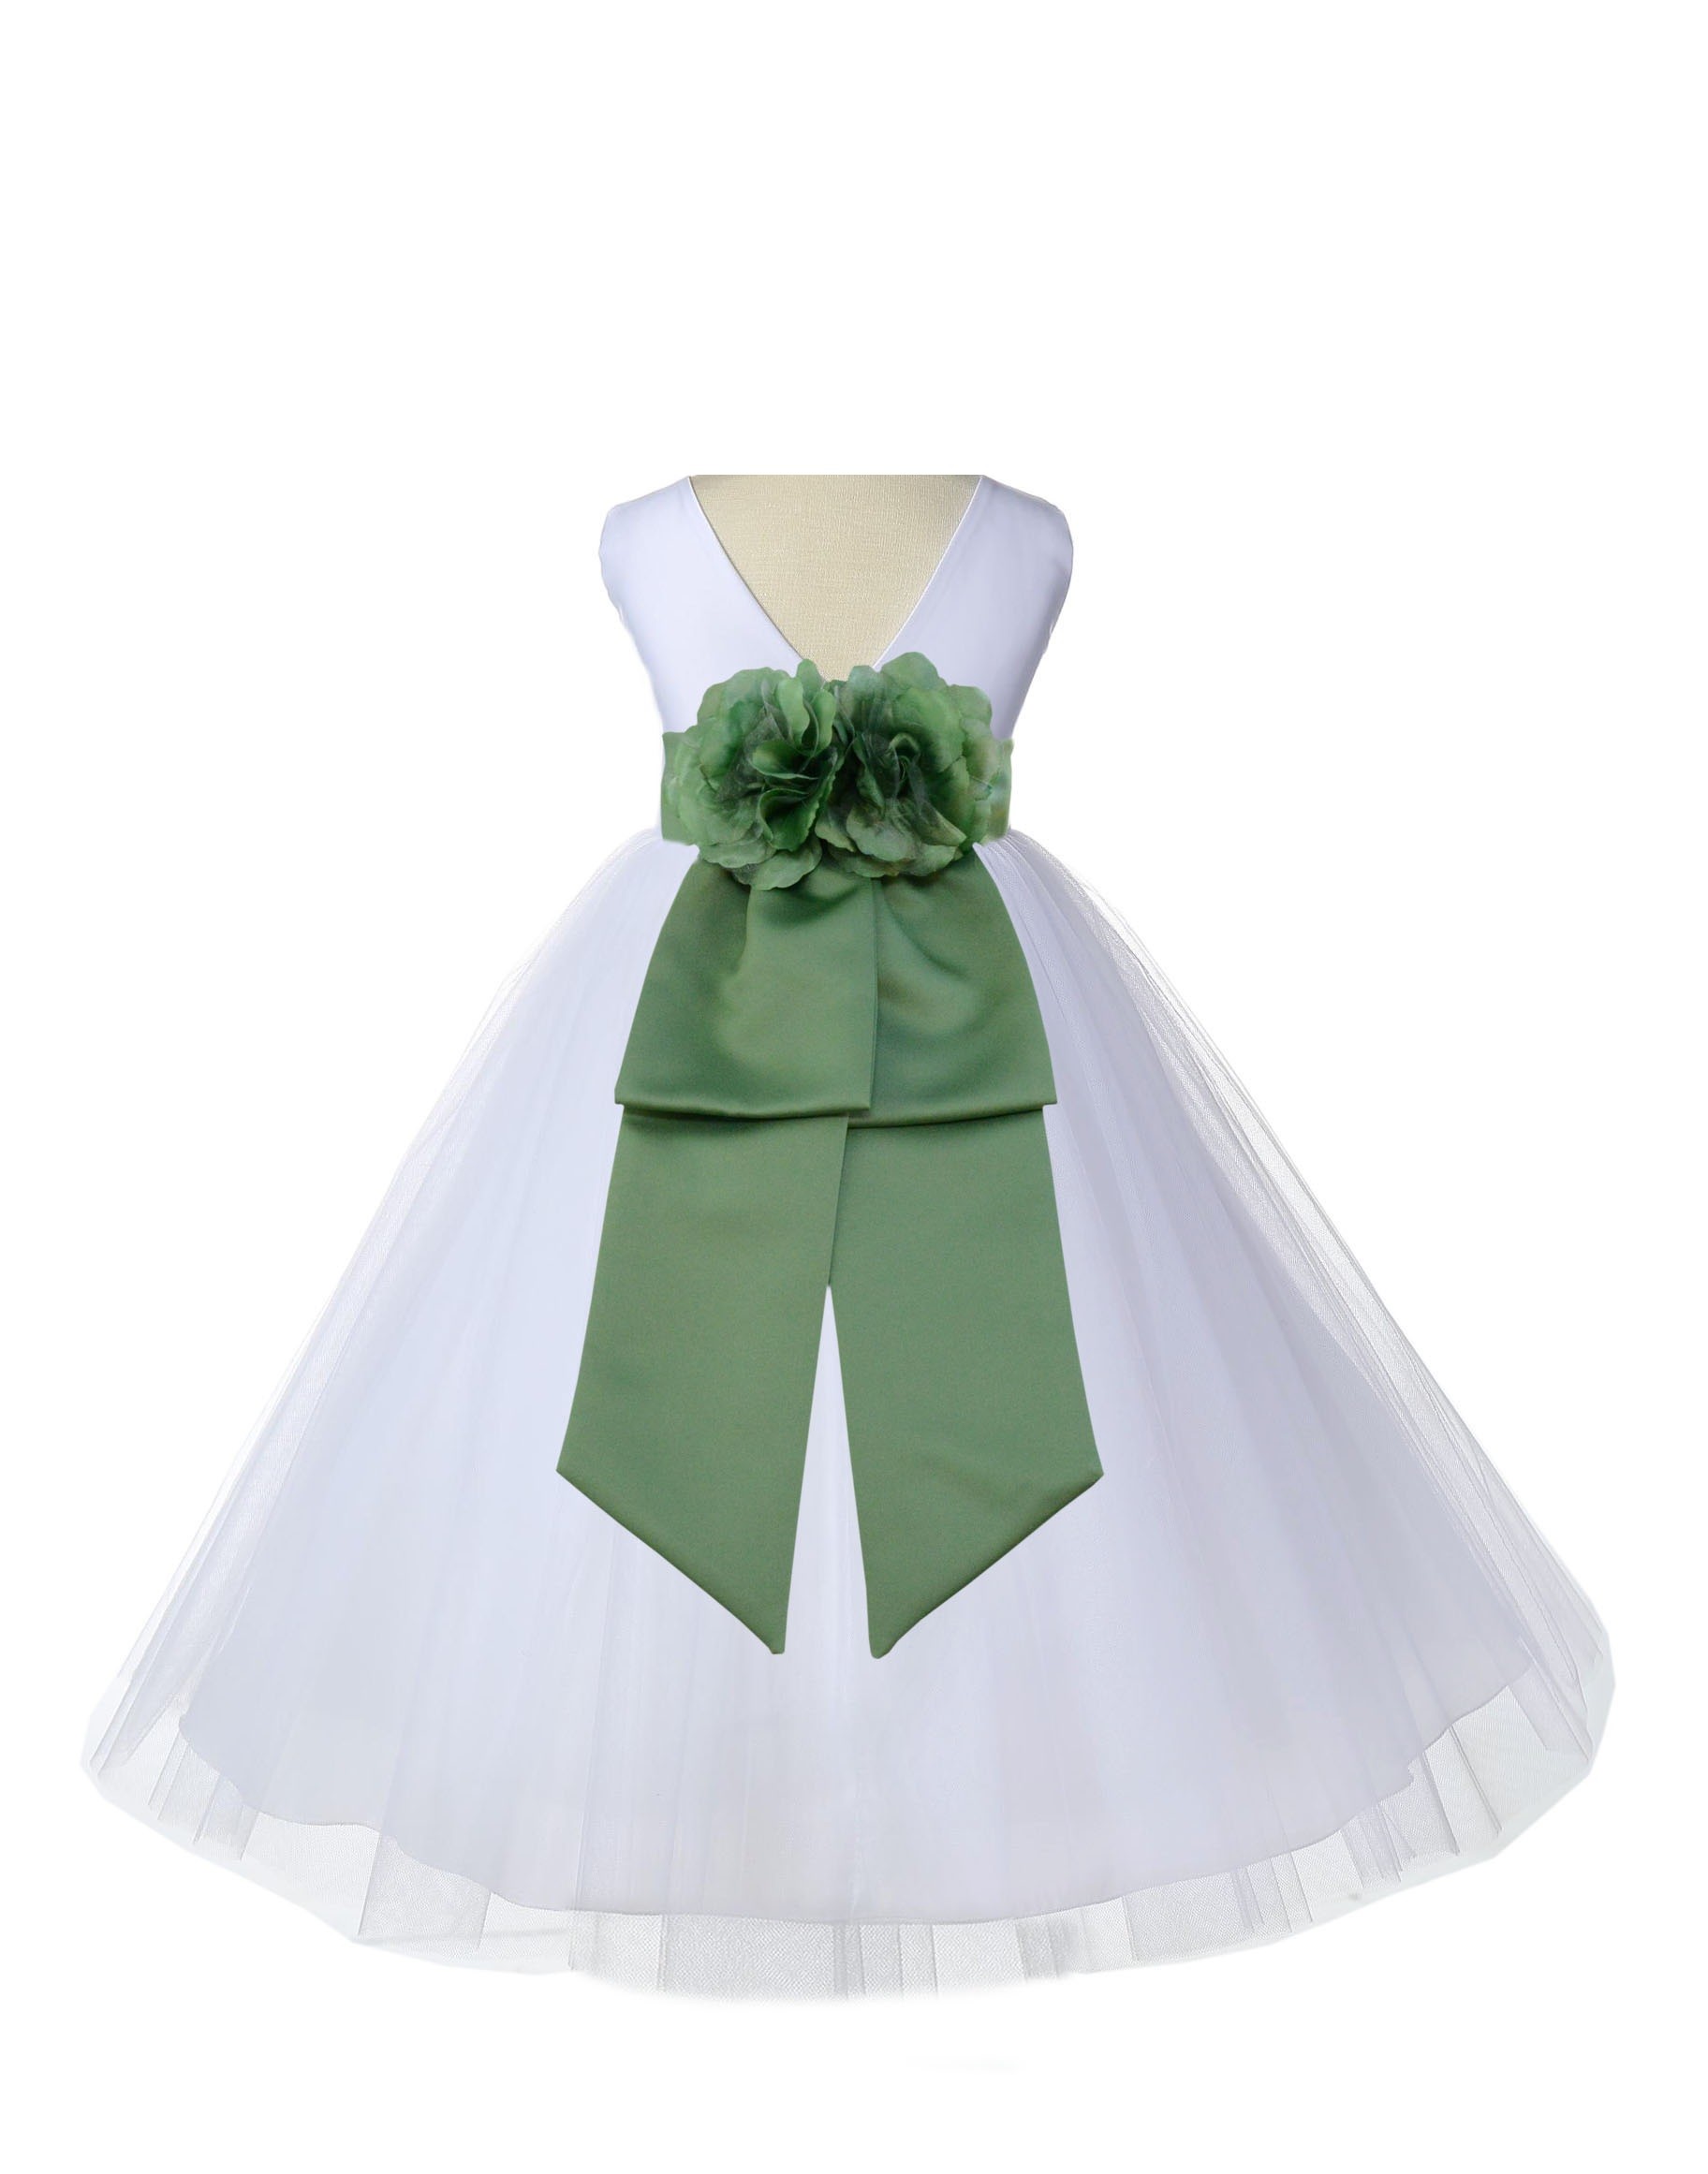 V-Neck Tulle White/Clover Green Flower Girl Dress Wedding Pageant 108